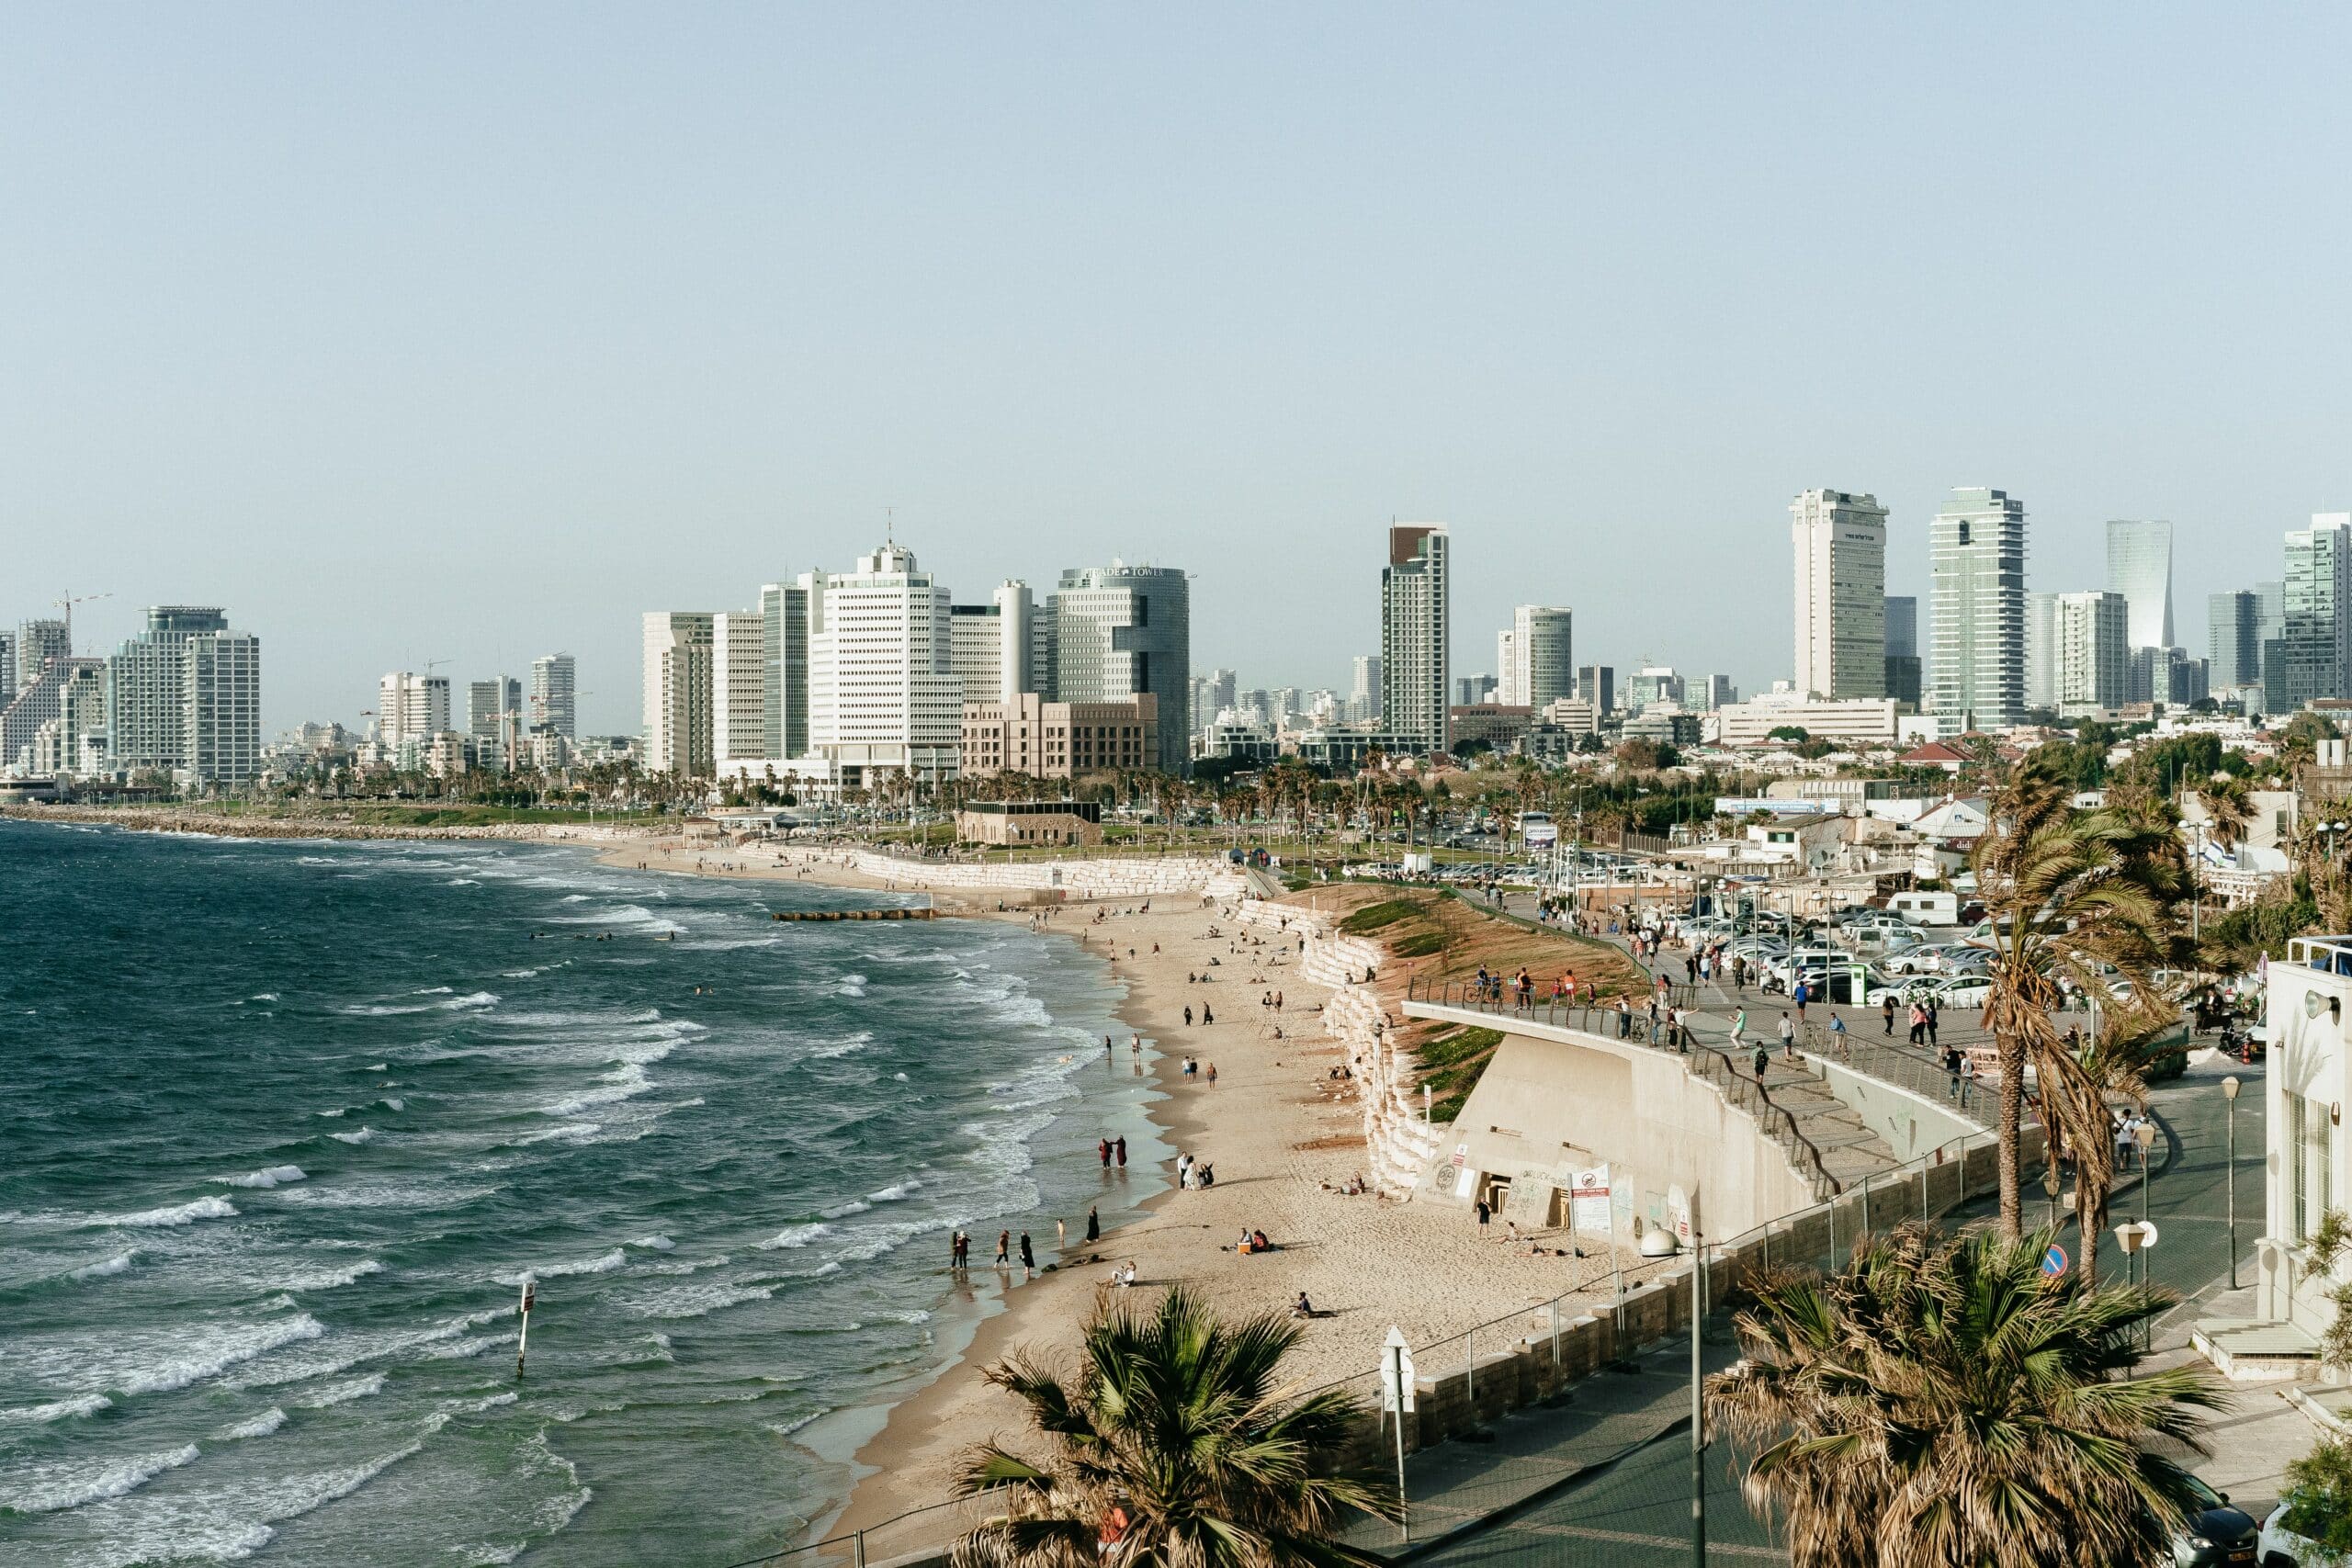 Vista de cima da cidade de Tel Aviv-Yafo, Israel, com mar, faixa de areia, pessoas caminhando na areia e ao fundo prédios.